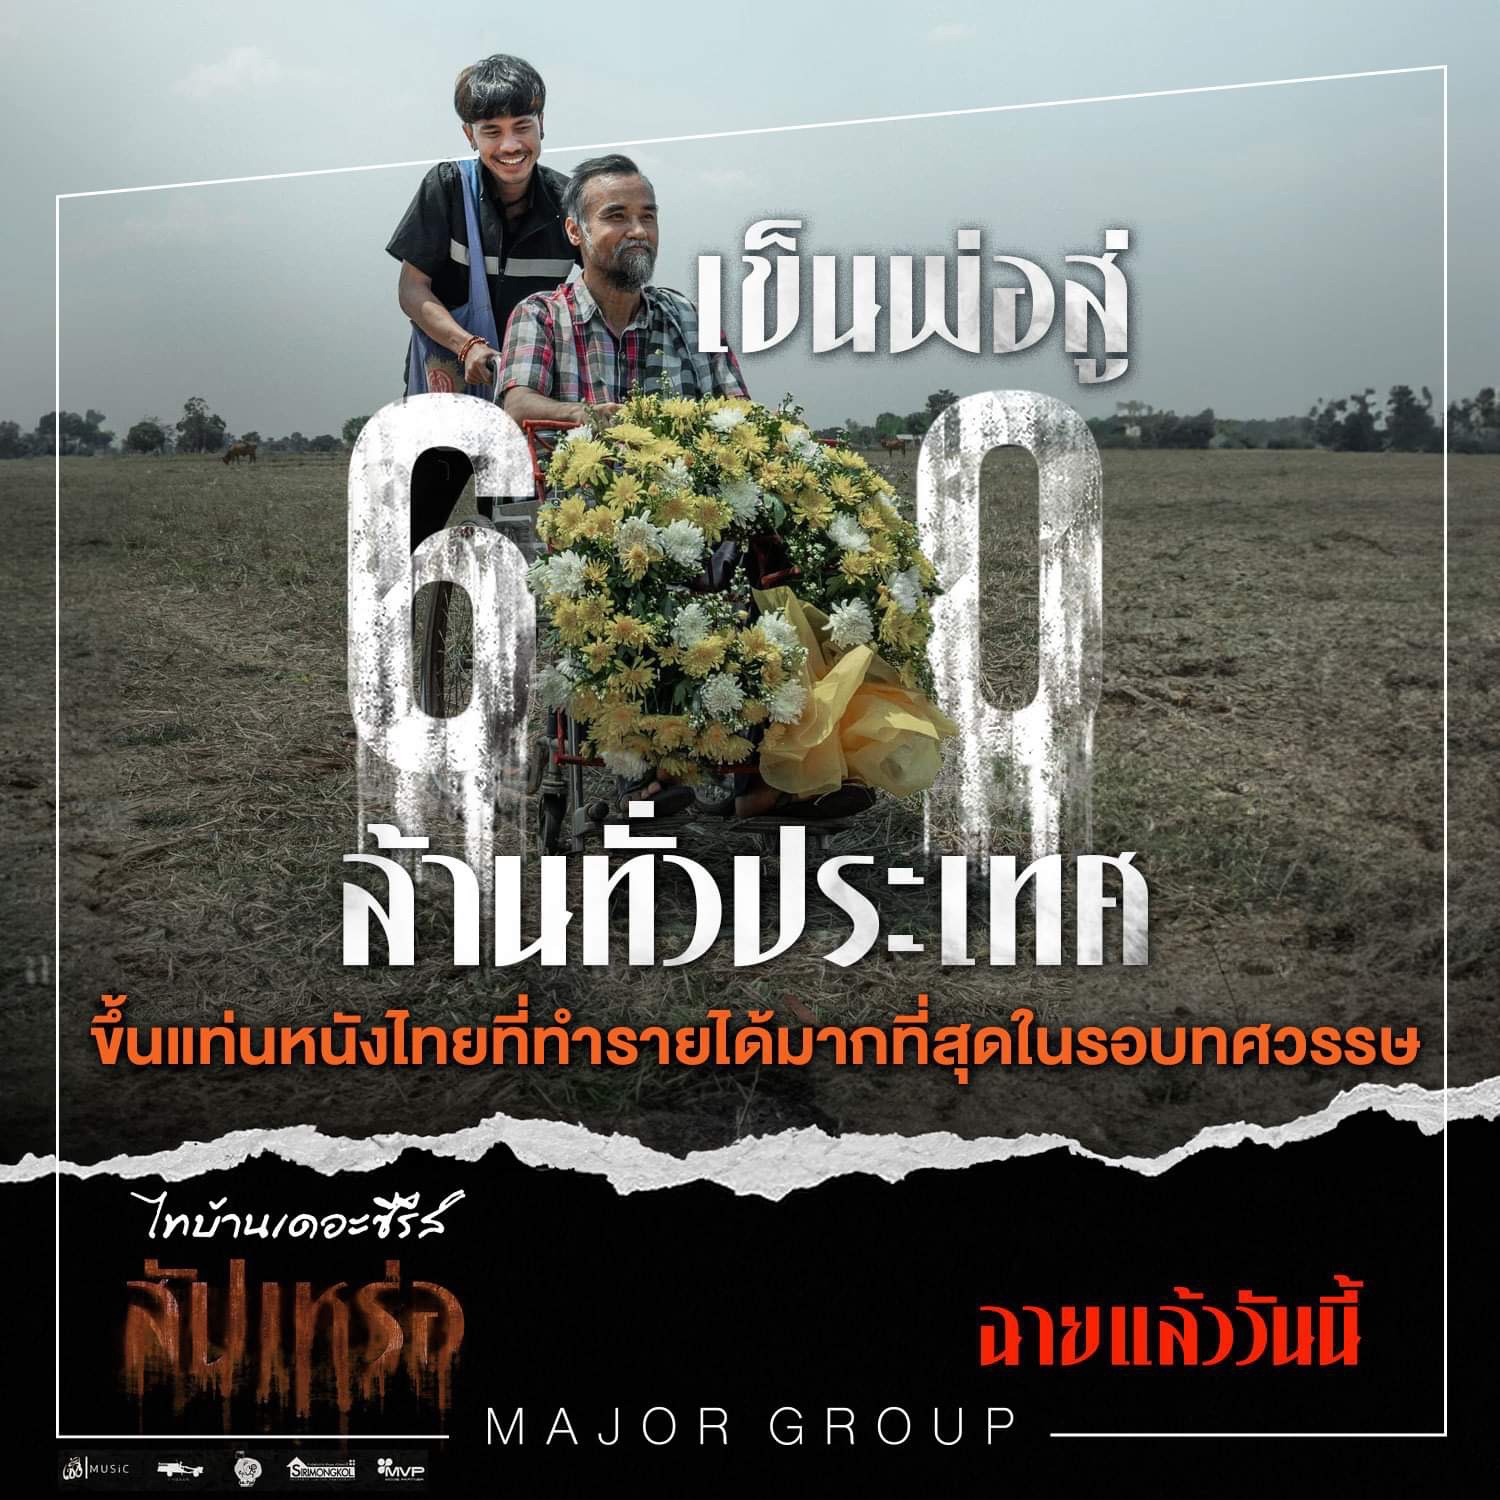  “สัปเหร่อ” ทะยานสู่ 600 ล้านบาทเรียบร้อยแล้ว ขึ้นแท่นเป็นหนังไทยที่ทำรายได้มากที่สุดในรอบทศวรรษ